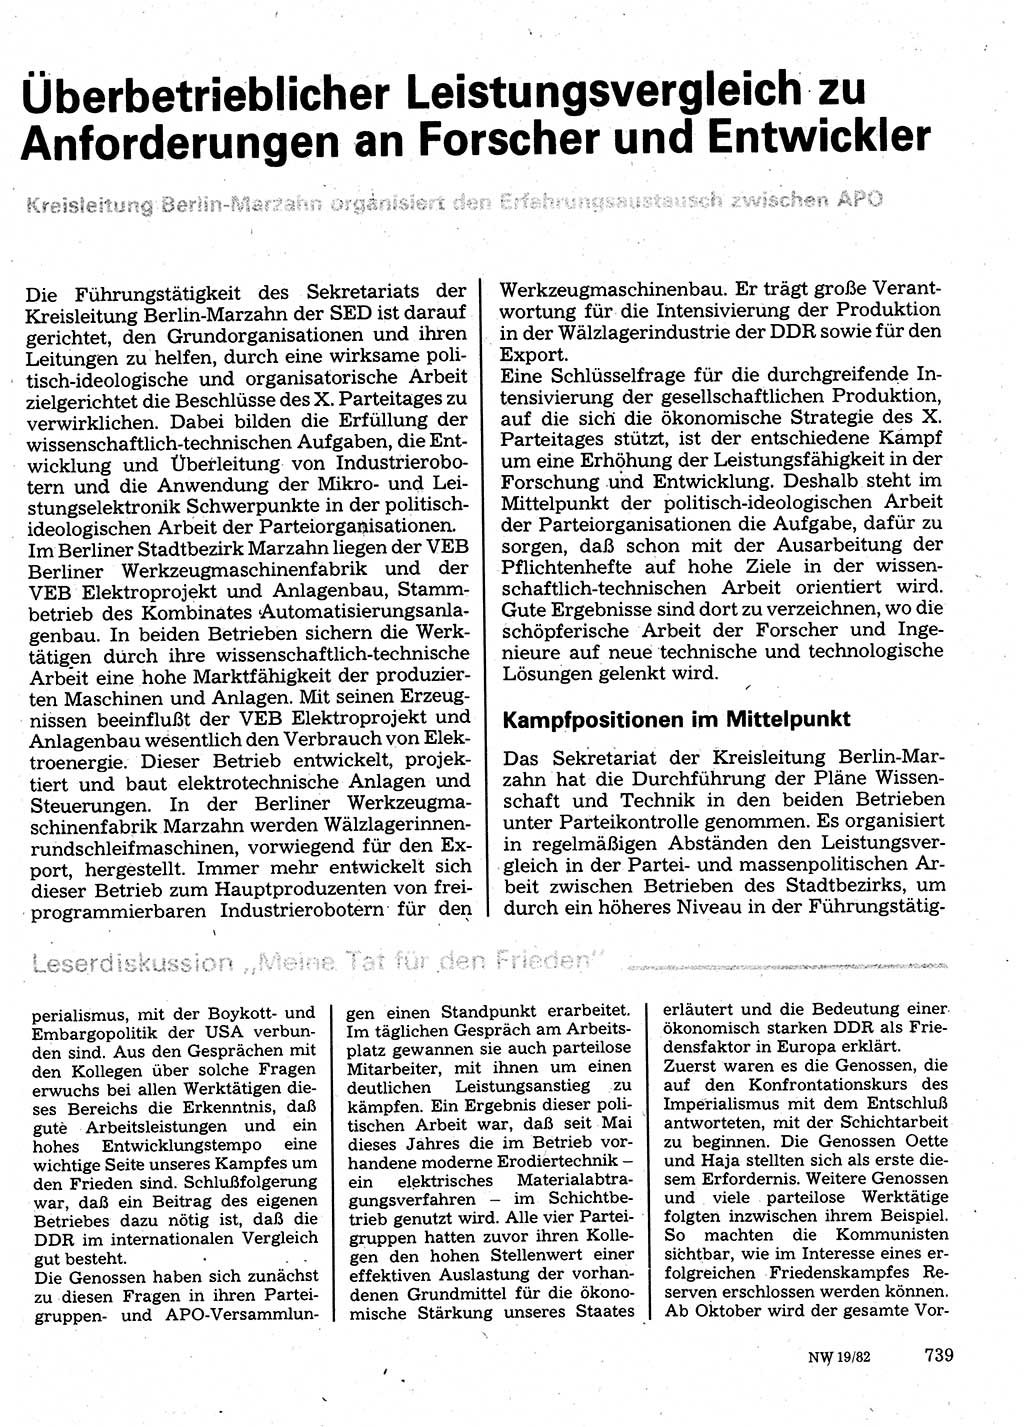 Neuer Weg (NW), Organ des Zentralkomitees (ZK) der SED (Sozialistische Einheitspartei Deutschlands) für Fragen des Parteilebens, 37. Jahrgang [Deutsche Demokratische Republik (DDR)] 1982, Seite 739 (NW ZK SED DDR 1982, S. 739)